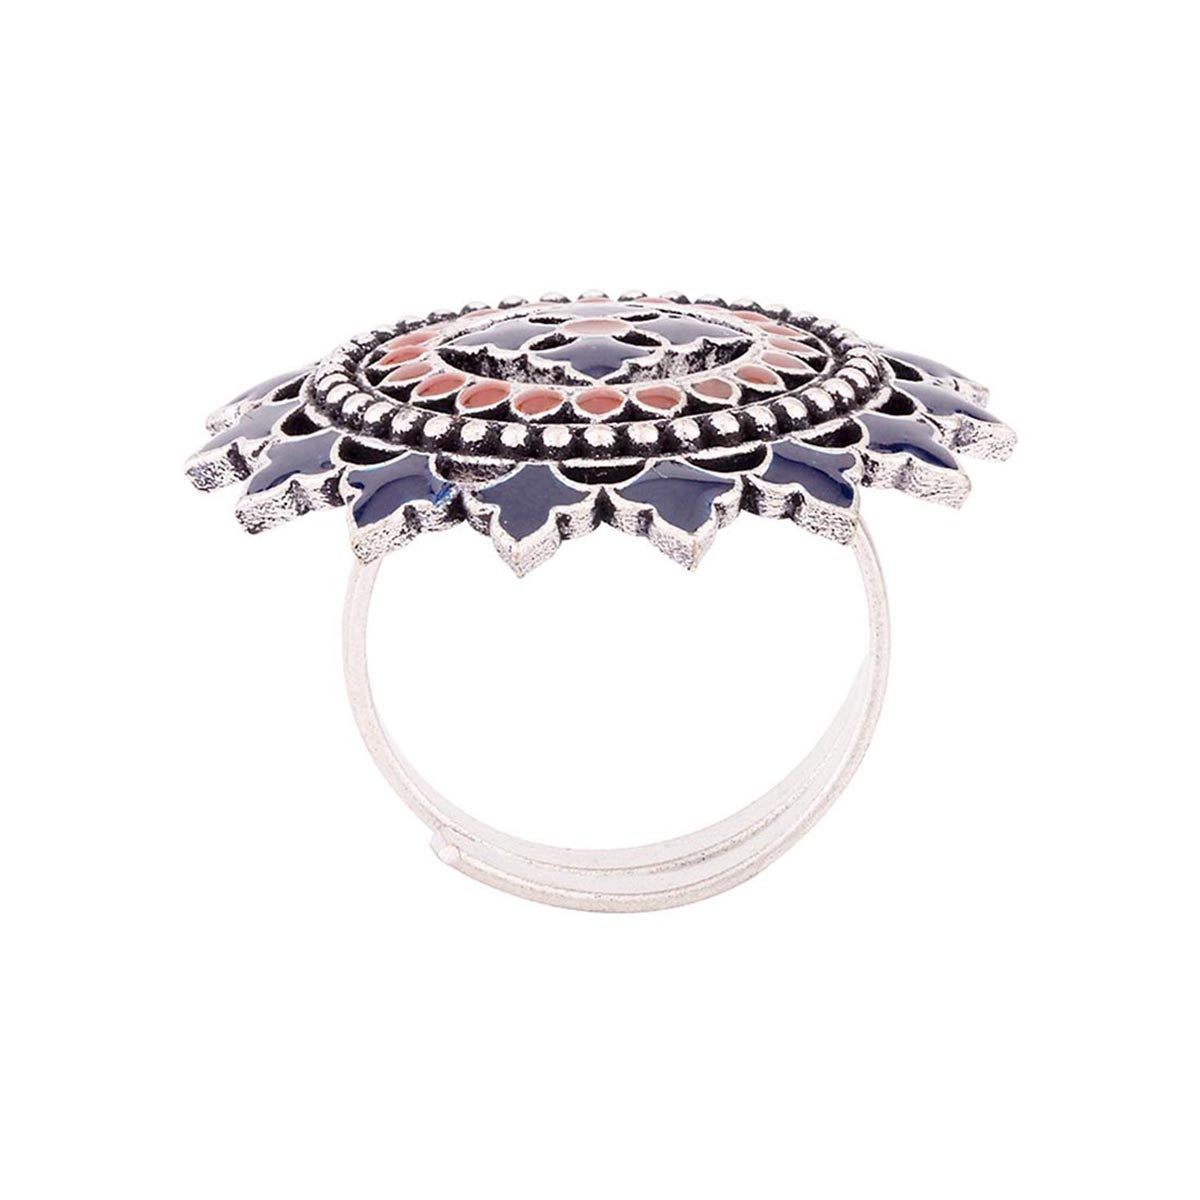 Mandala Tribal Inspired Ring